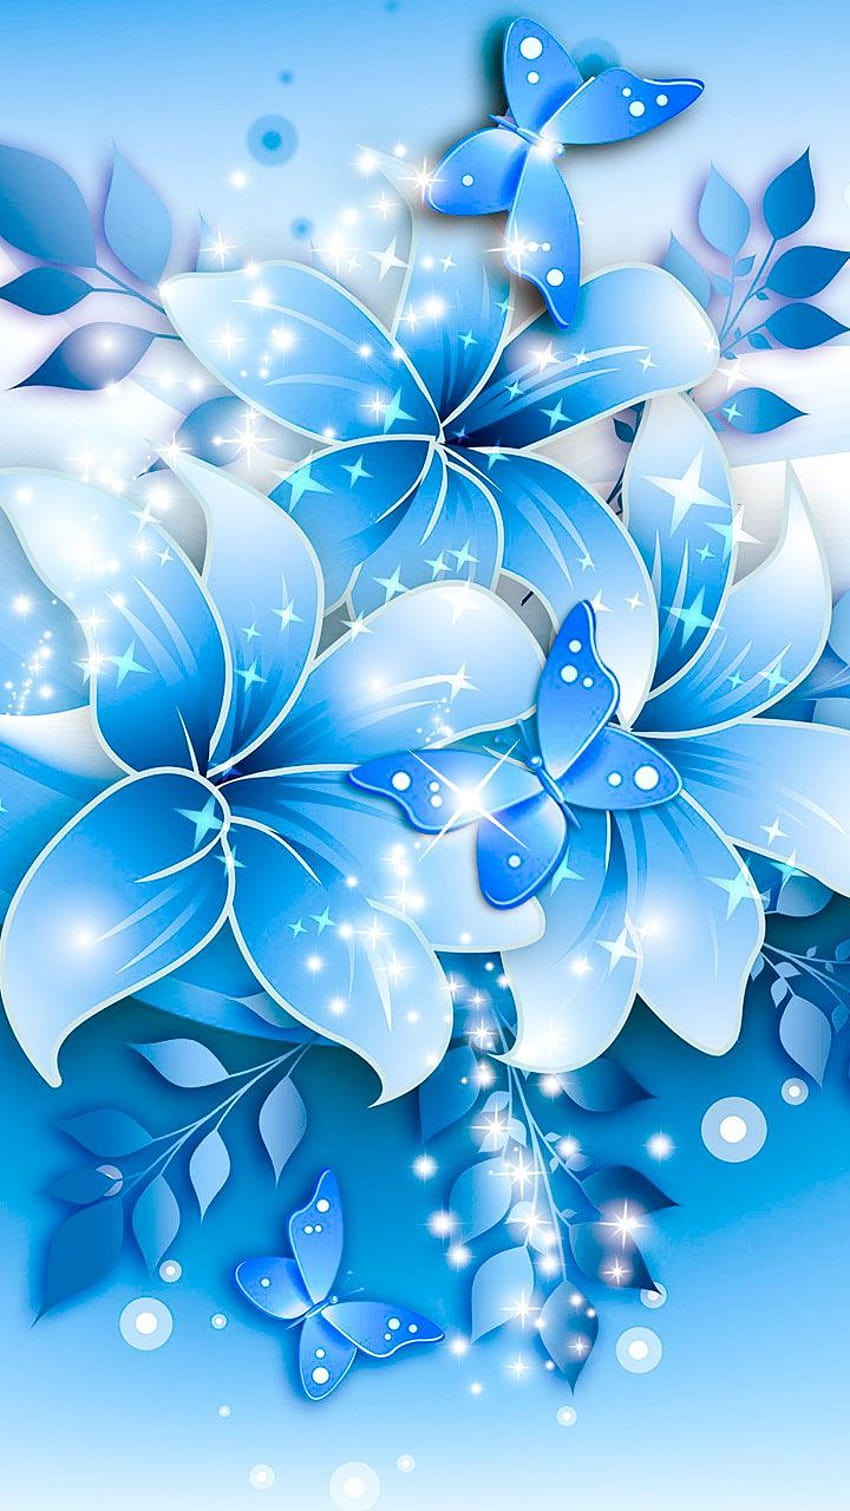 青い花のデザインの花のイラスト。 花のファンのためのシャープな高解像度アート、水色の花 HD電話の壁紙